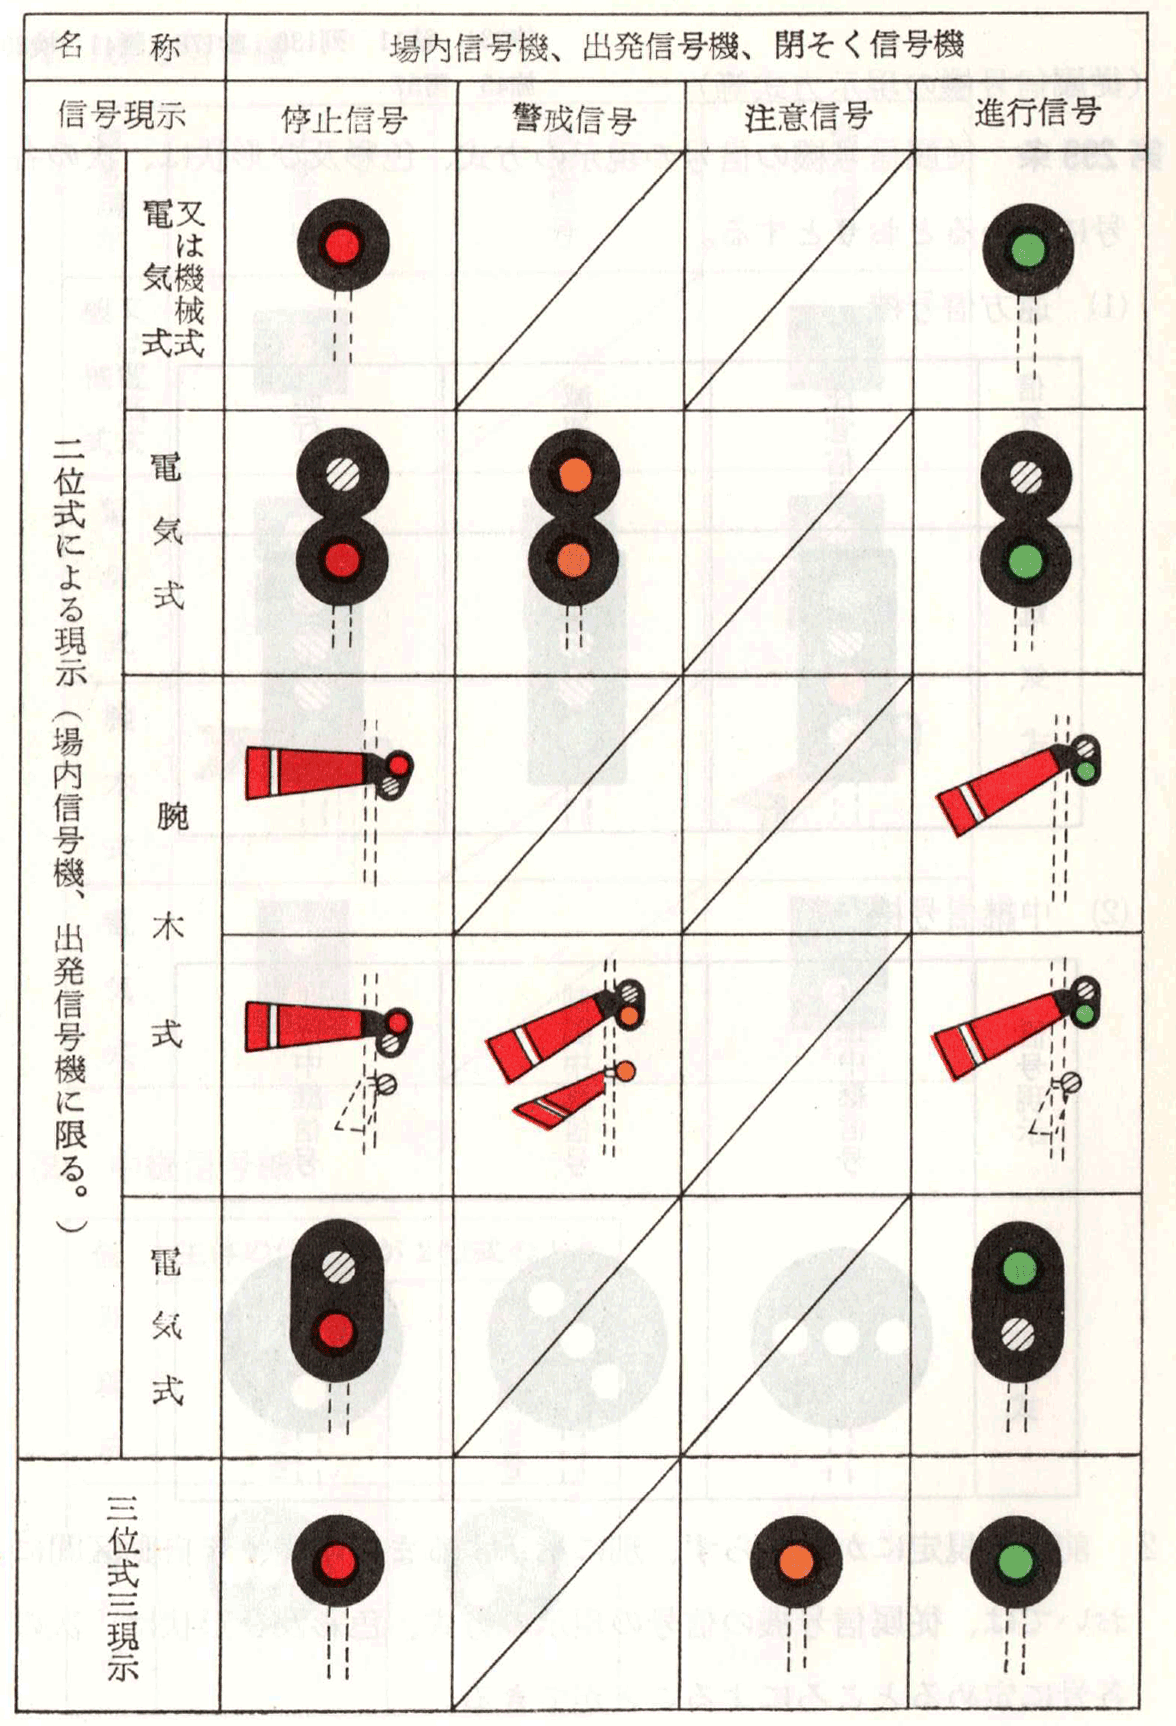 主信号機の信号の現示の方式、色彩及び形状